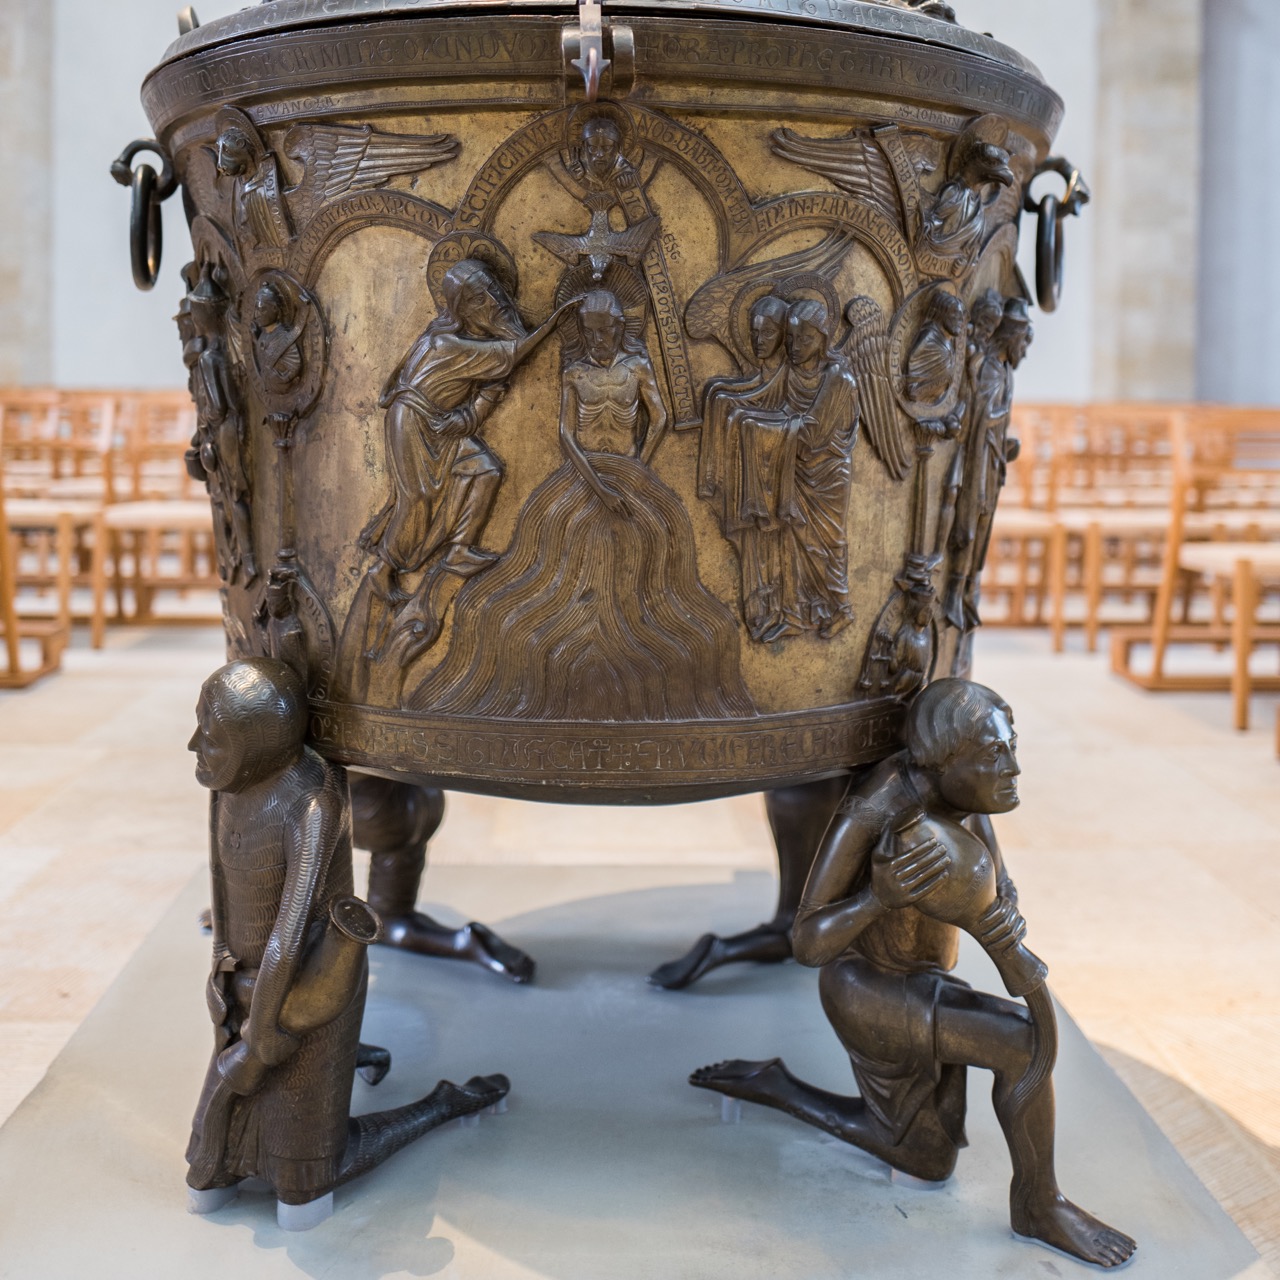 Bronzetaufbecken (frühes 13. Jh.), Taufe Christi